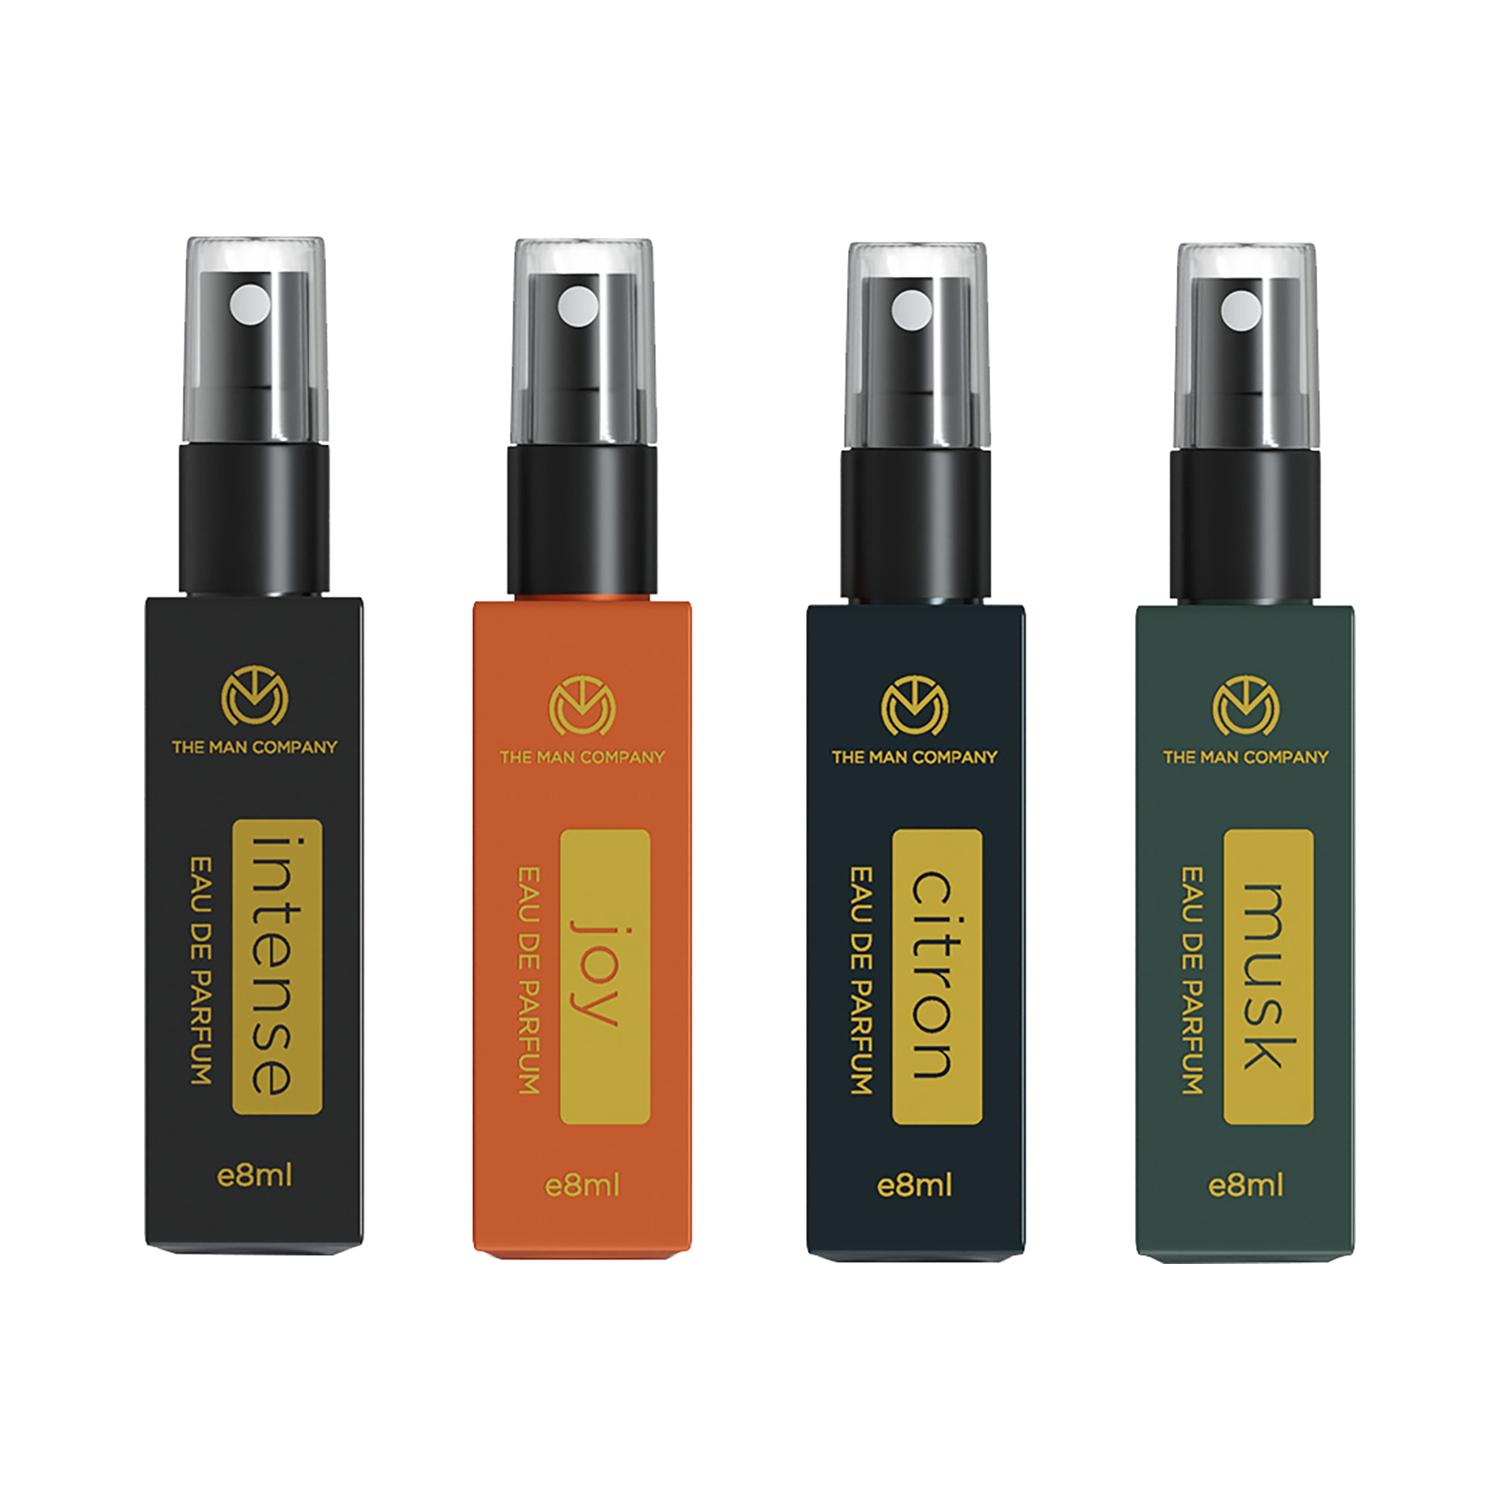 The Man Company | The Man Company Everyday Use Travel Friendly Pocket Perfume Set (4 pcs)